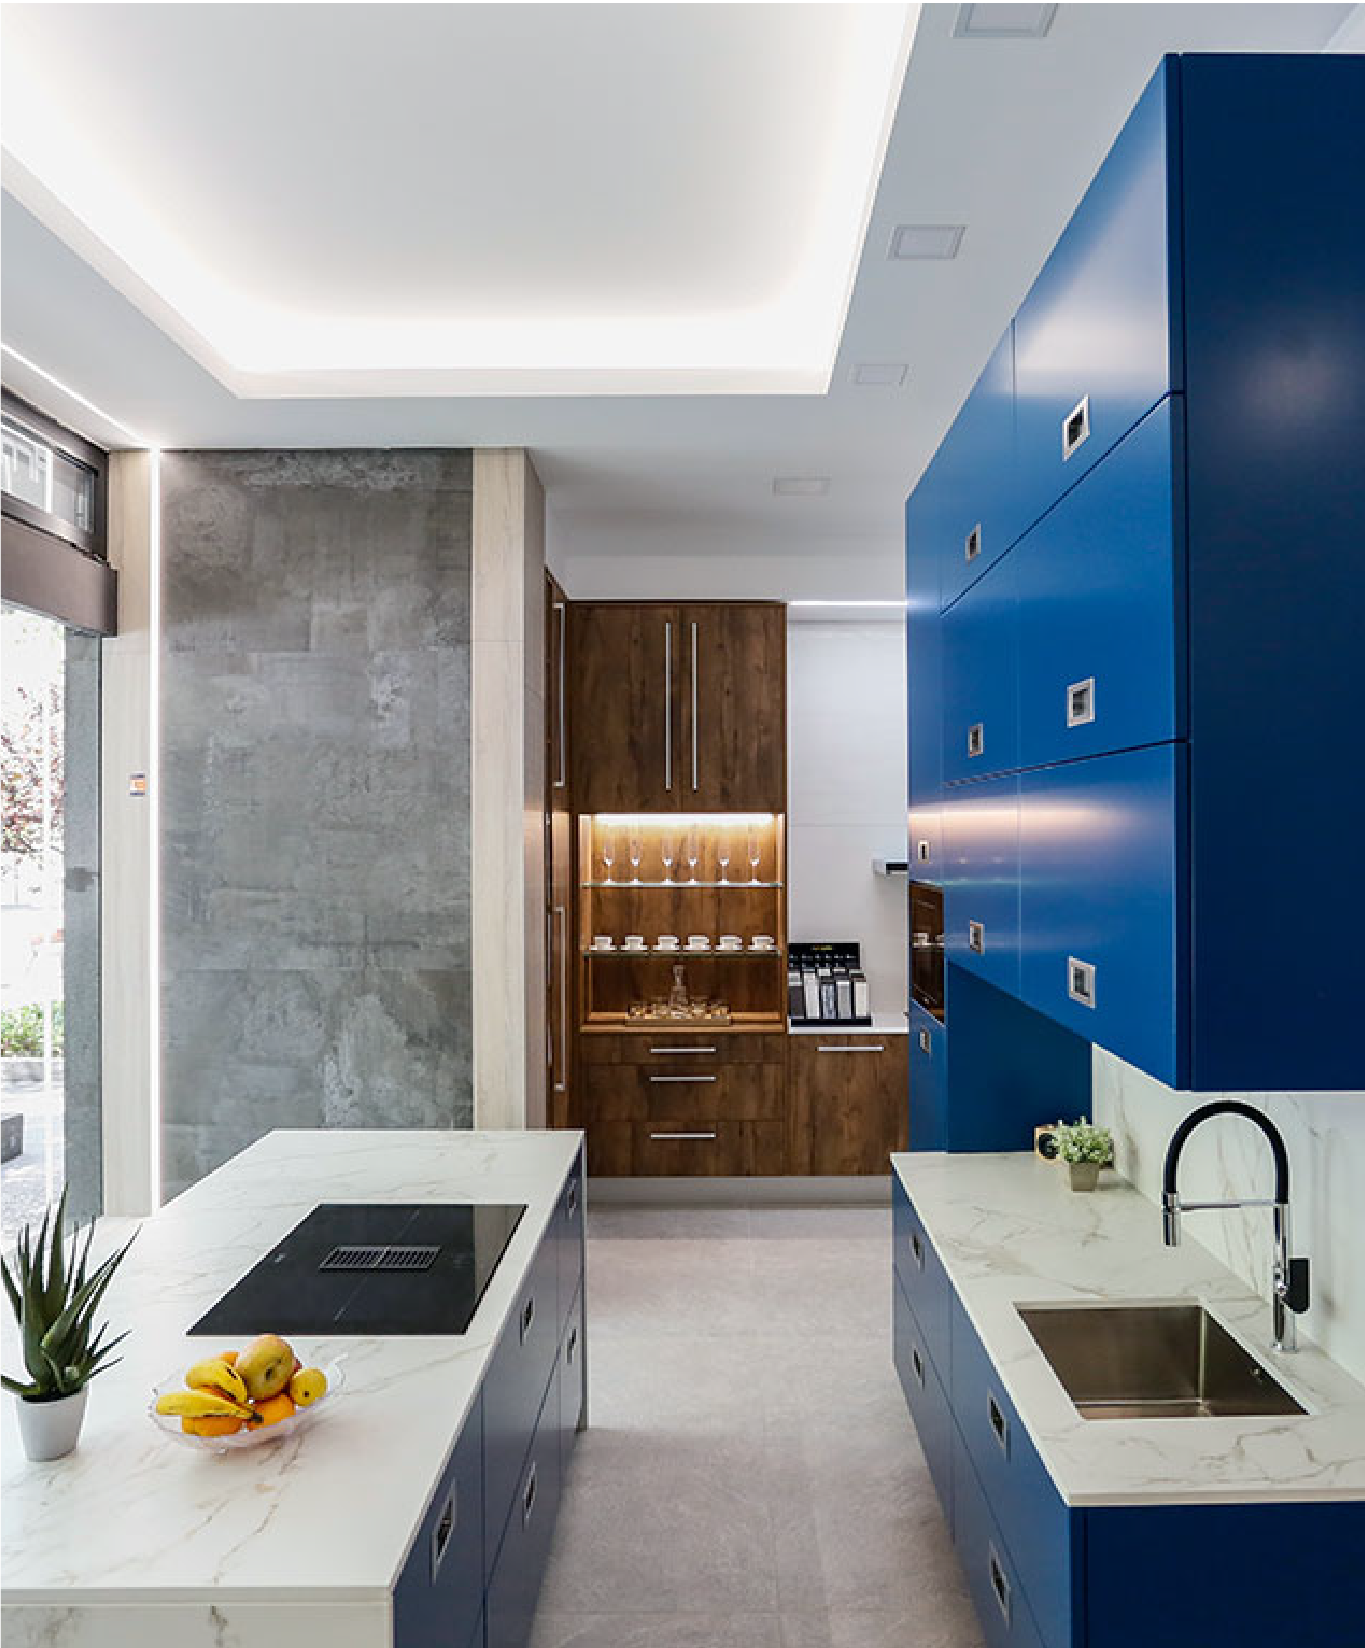 Zonas Showroom. Muesrta de una cocina en tono azul intenso y blanco